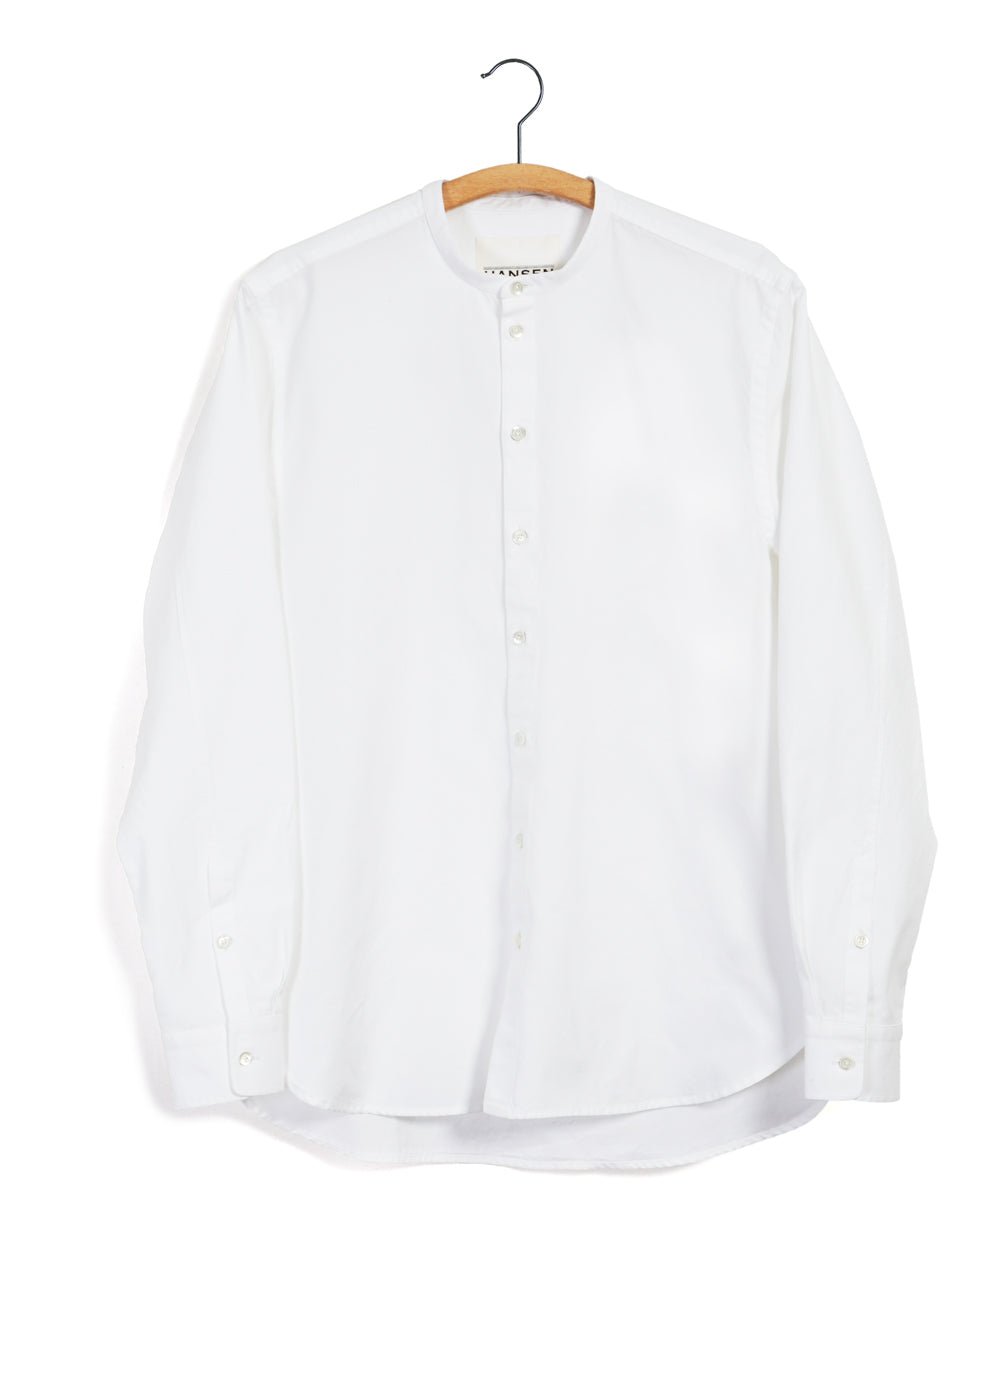 HANSEN GARMENTS - ANTE | Collarless Shirt | White - HANSEN Garments